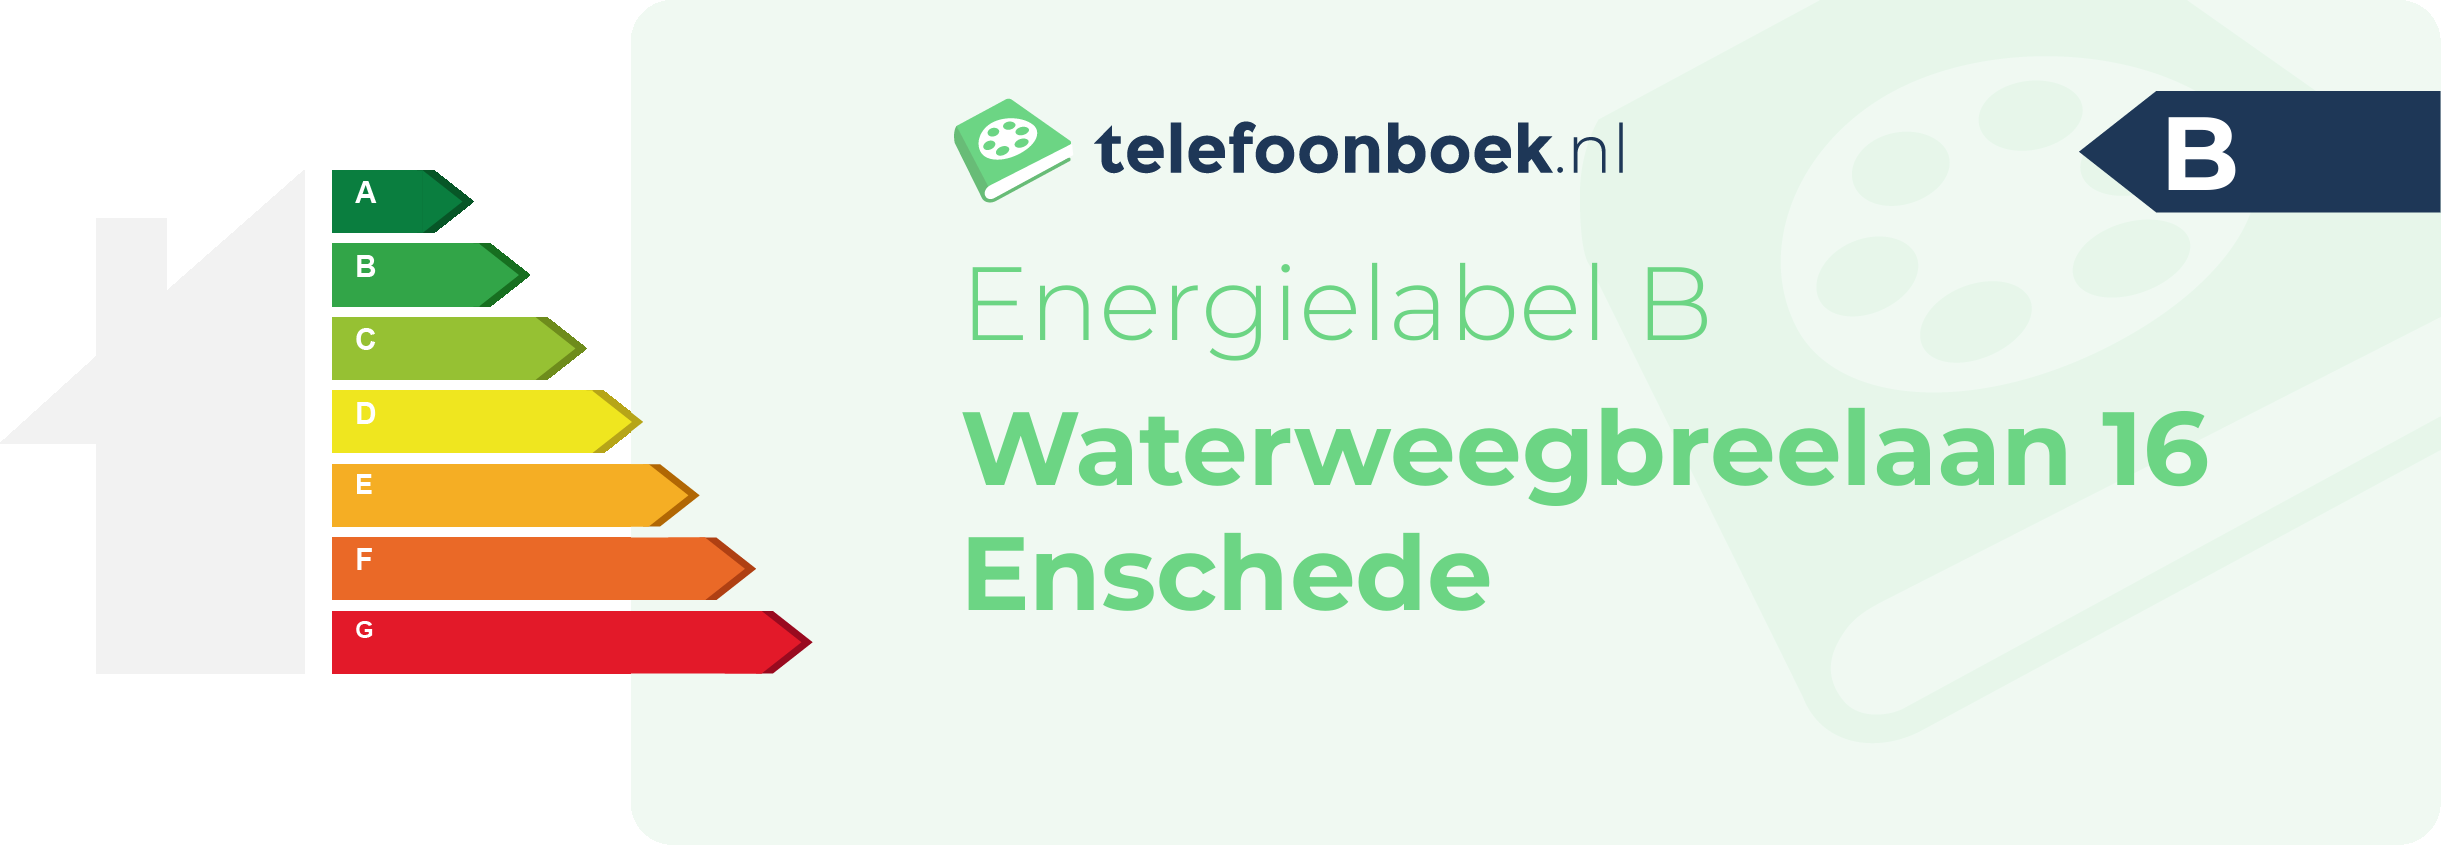 Energielabel Waterweegbreelaan 16 Enschede